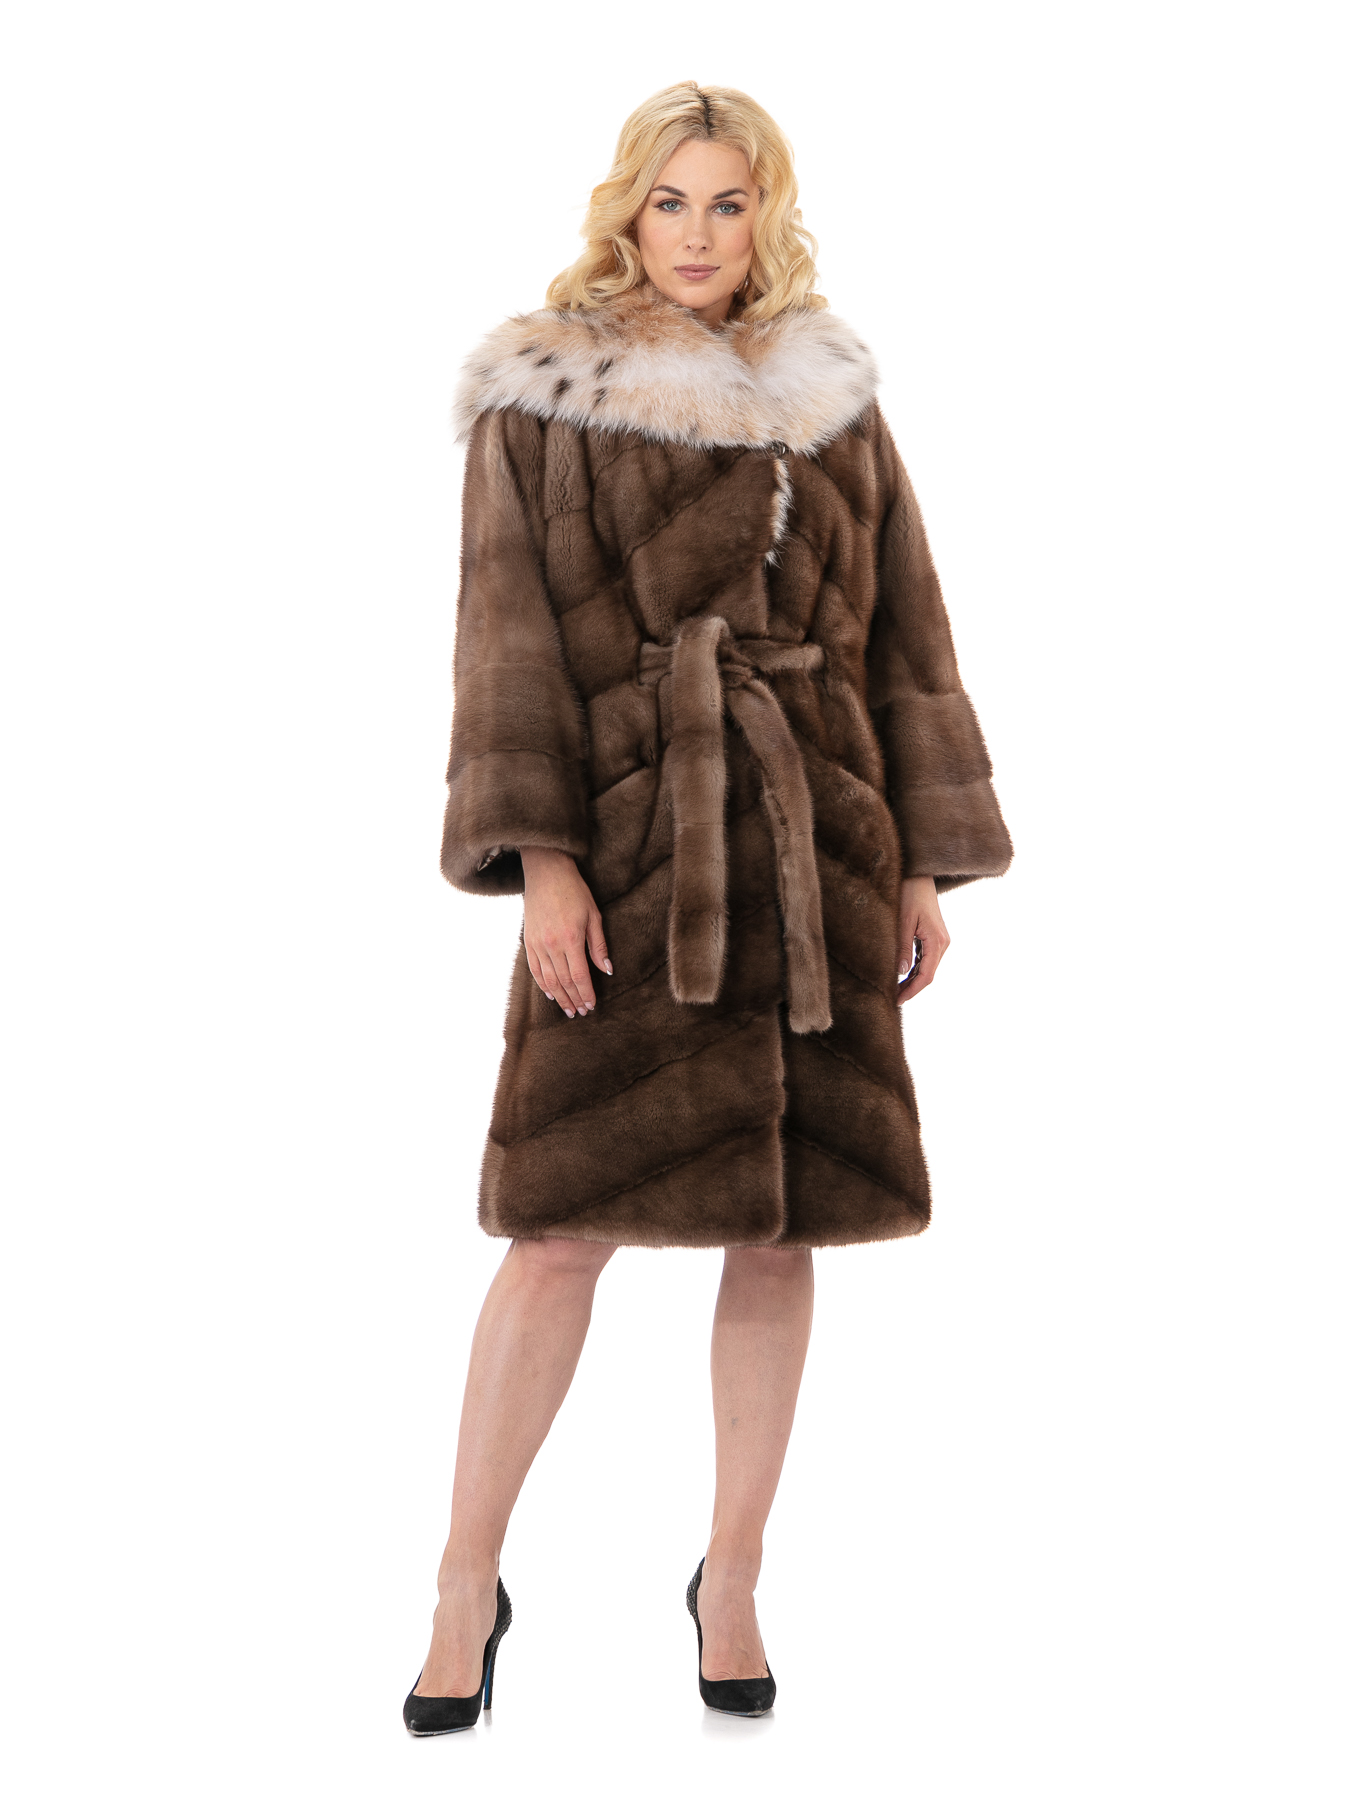 Женское пальто из меха норки с капюшоном, отделка из меха рыси